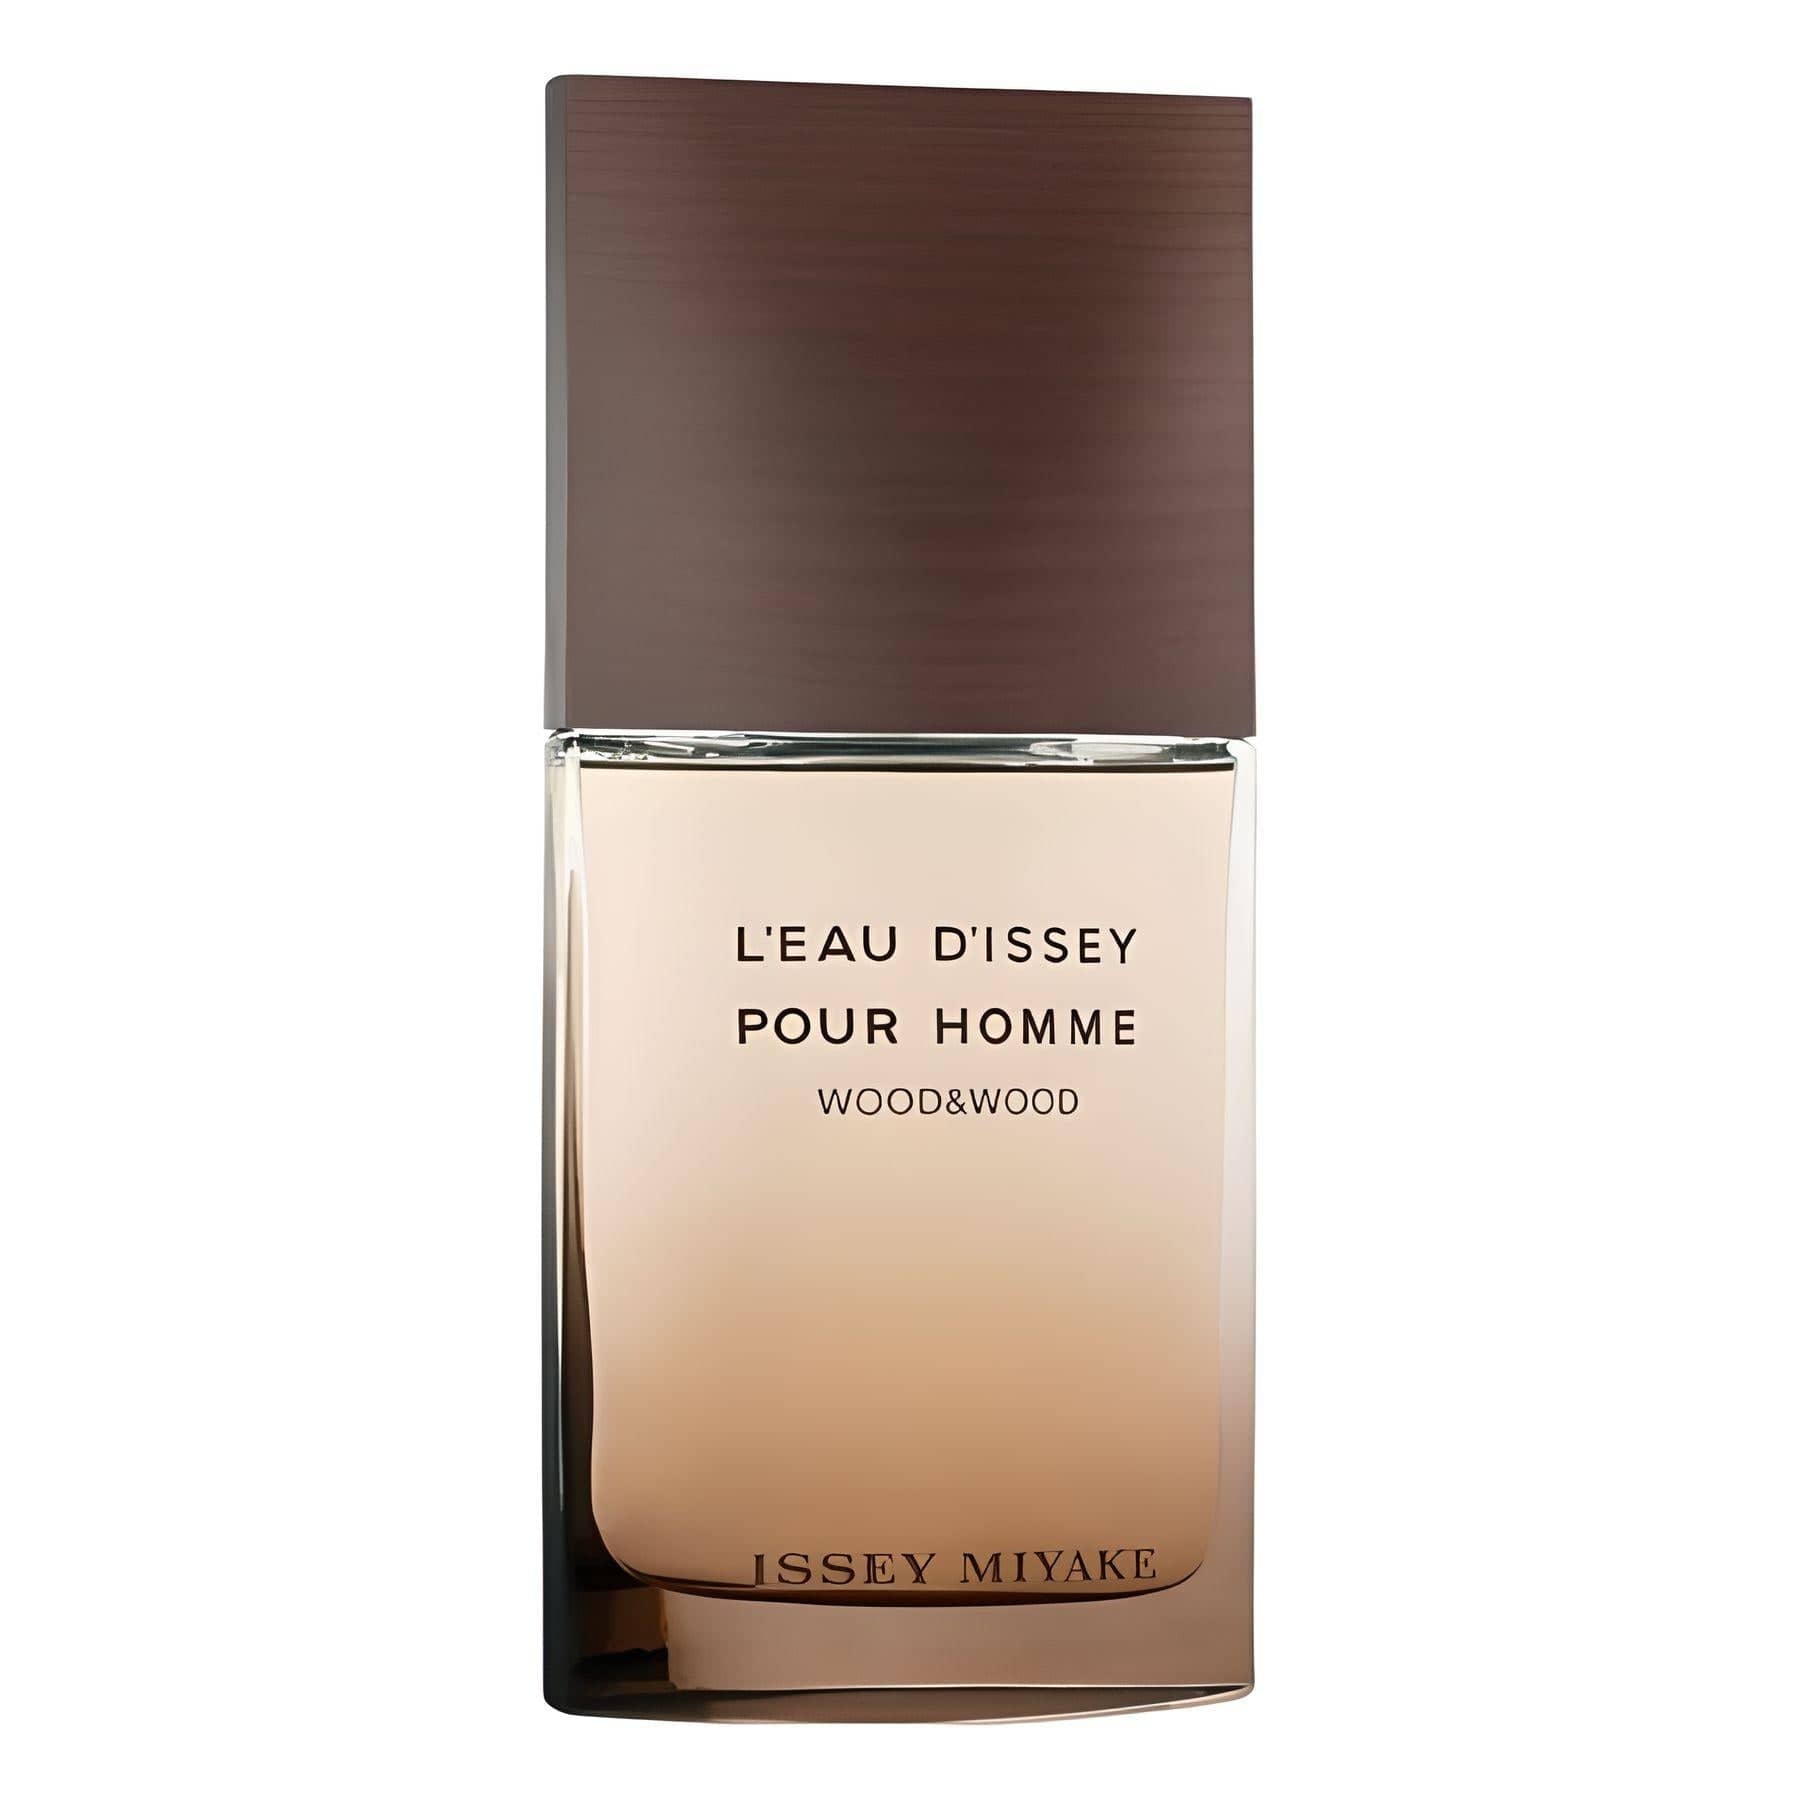 L'EAU D'ISSEY POUR HOMME WOOD&WOOD Eau de Parfum